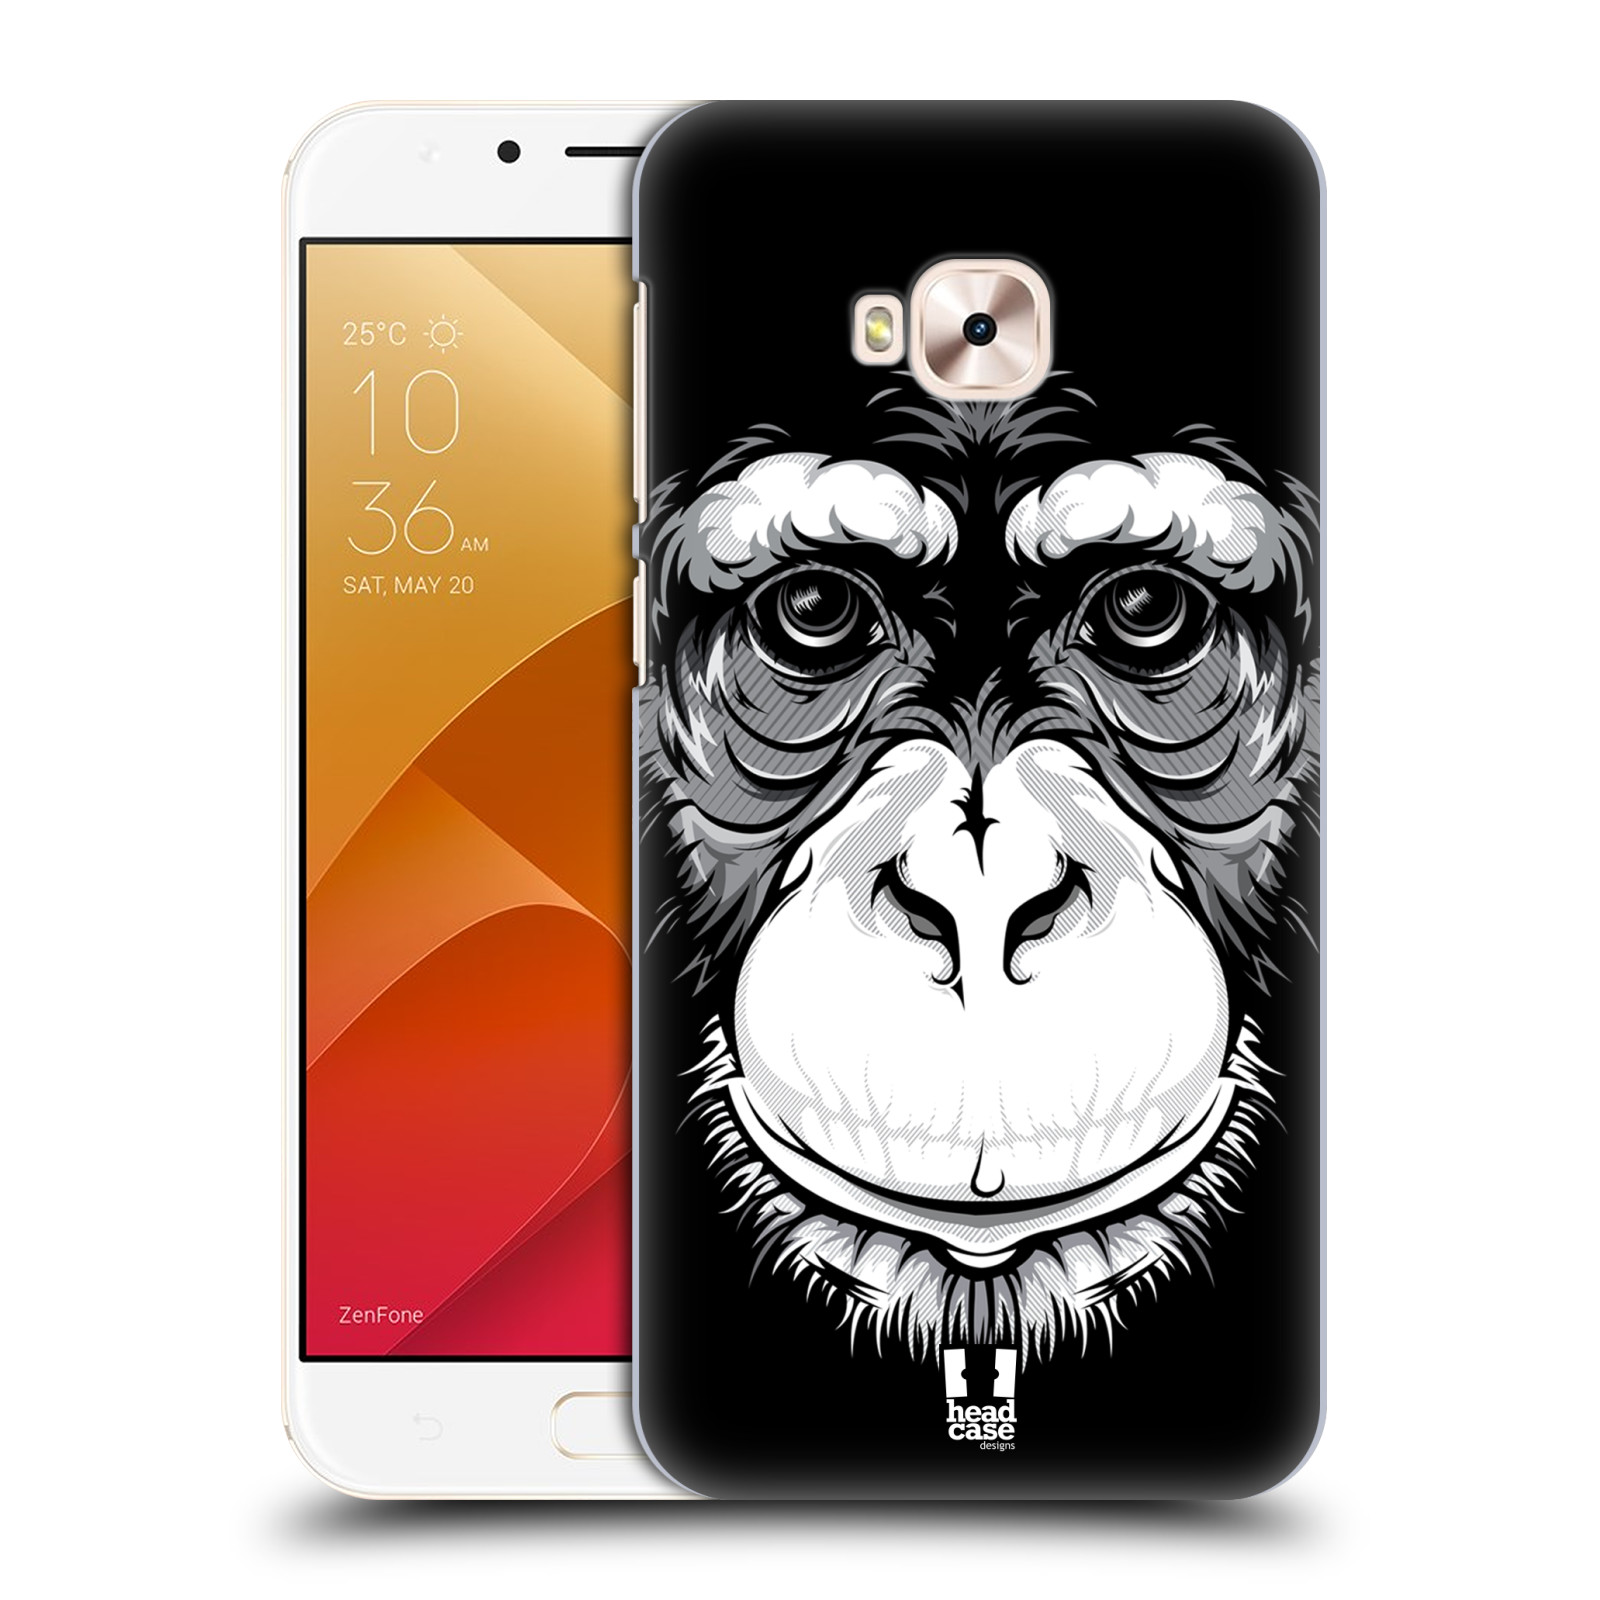 HEAD CASE plastový obal na mobil Asus Zenfone 4 Selfie Pro ZD552KL vzor Zvíře kreslená tvář šimpanz